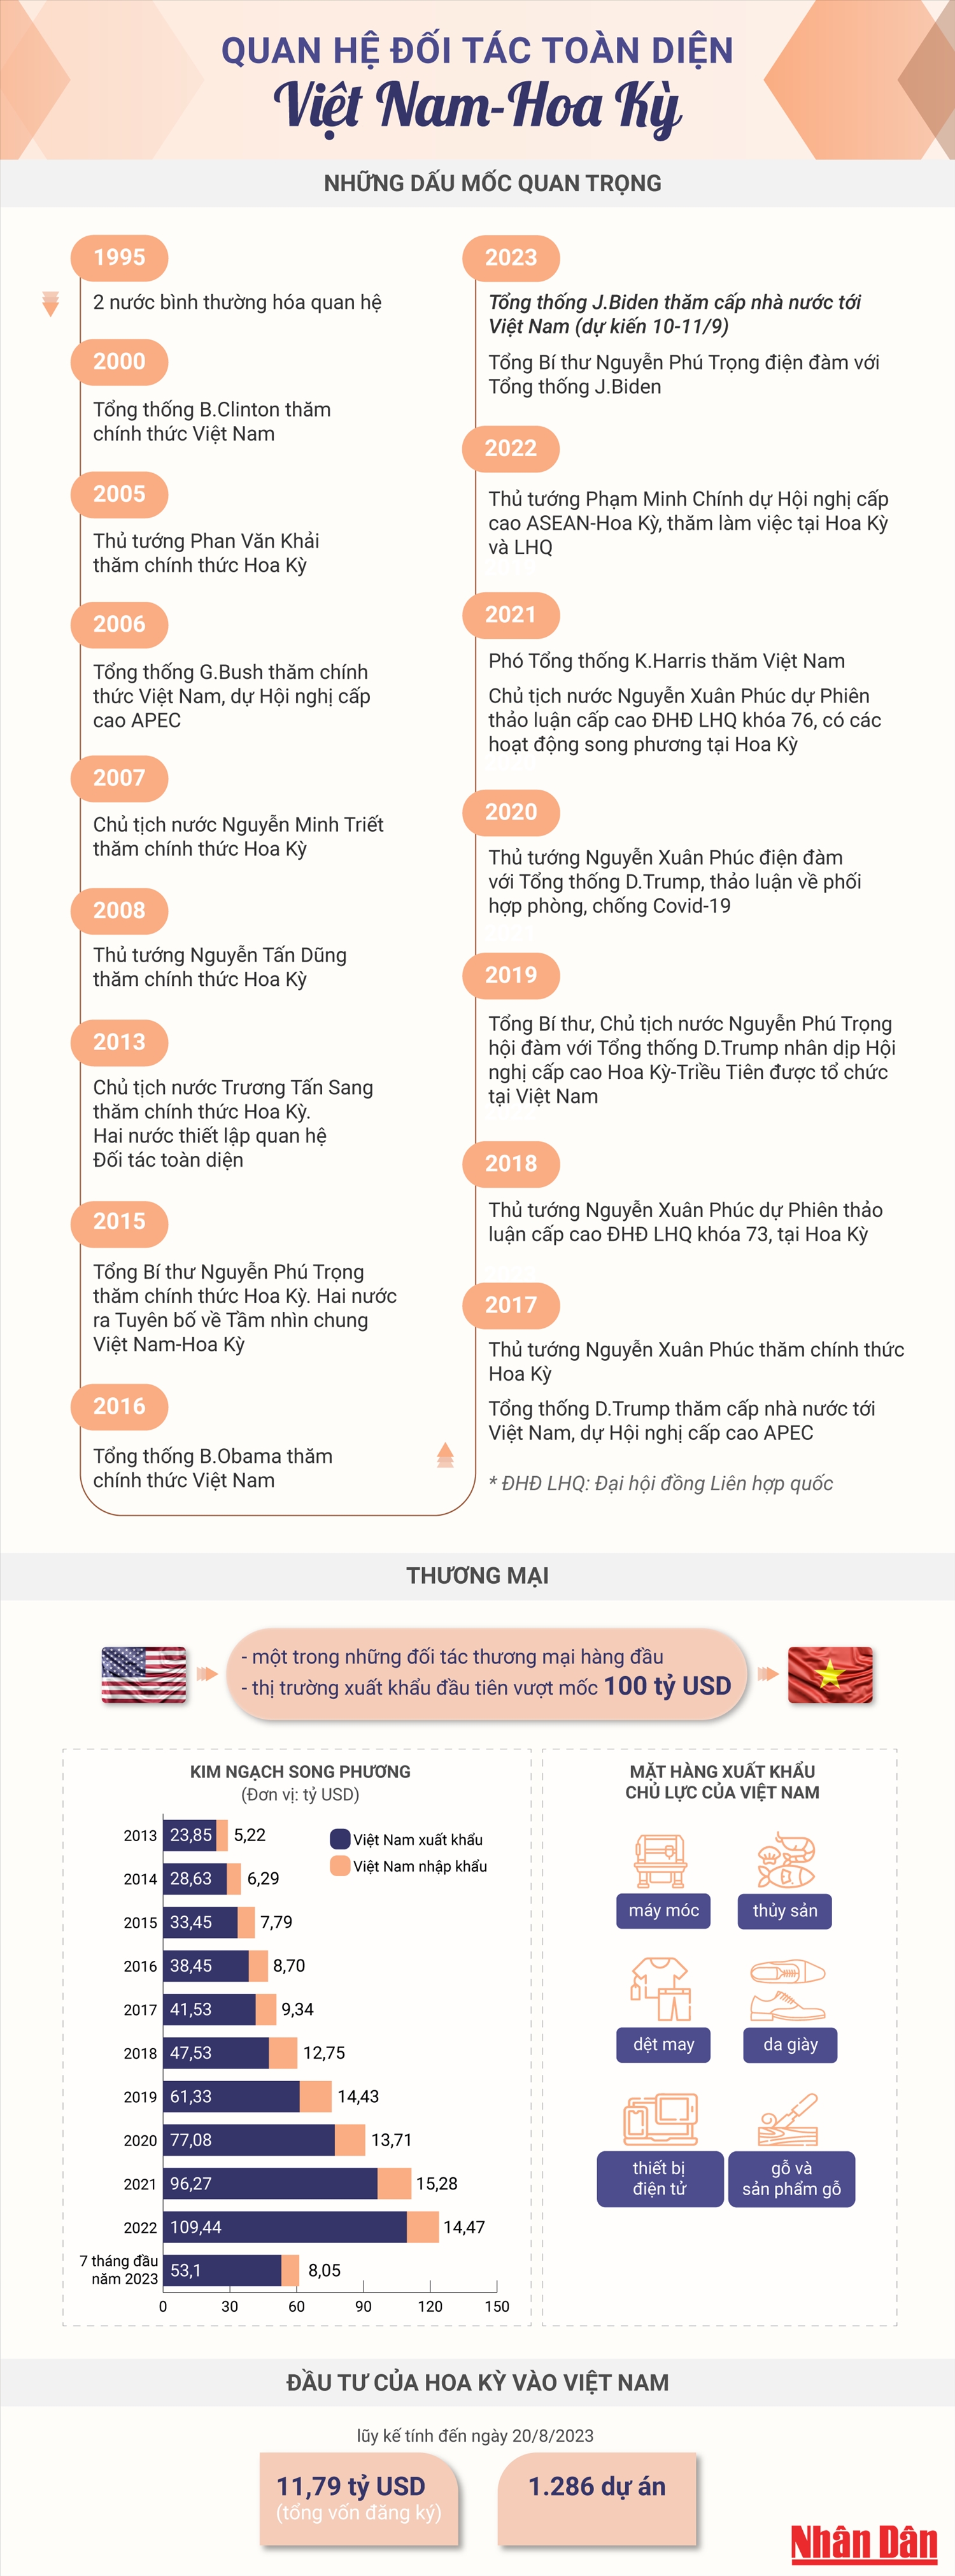 (Dẫn nguồn) Quan hệ Đối tác toàn diện Việt Nam-Hoa Kỳ